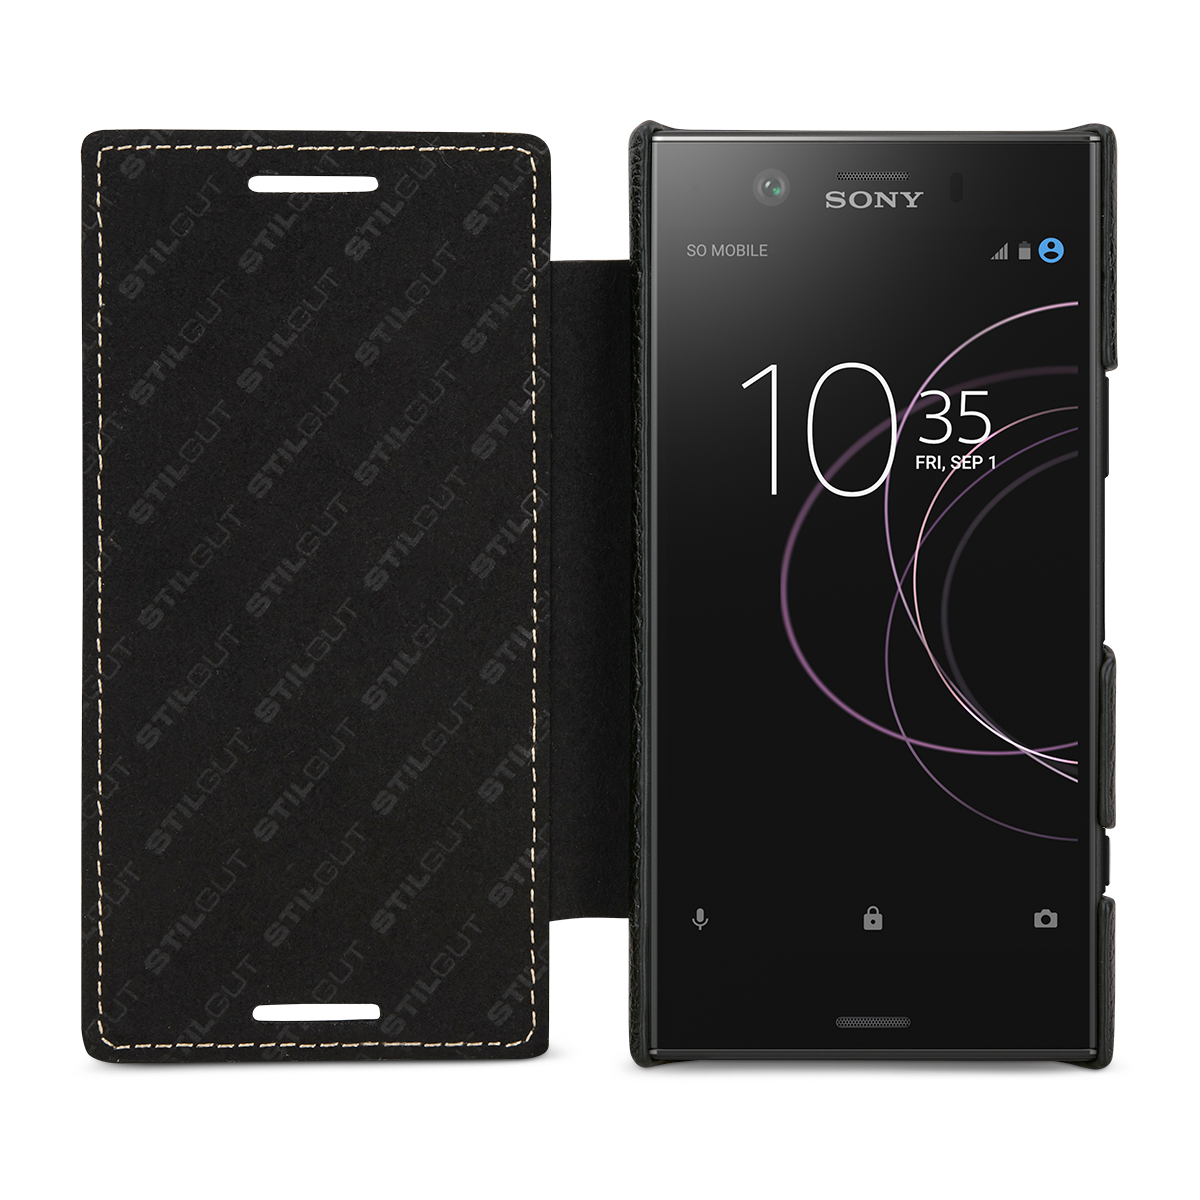 Book case con ventana móvil estuche protección bolso funda smart look Sony Xperia xz1 Compact